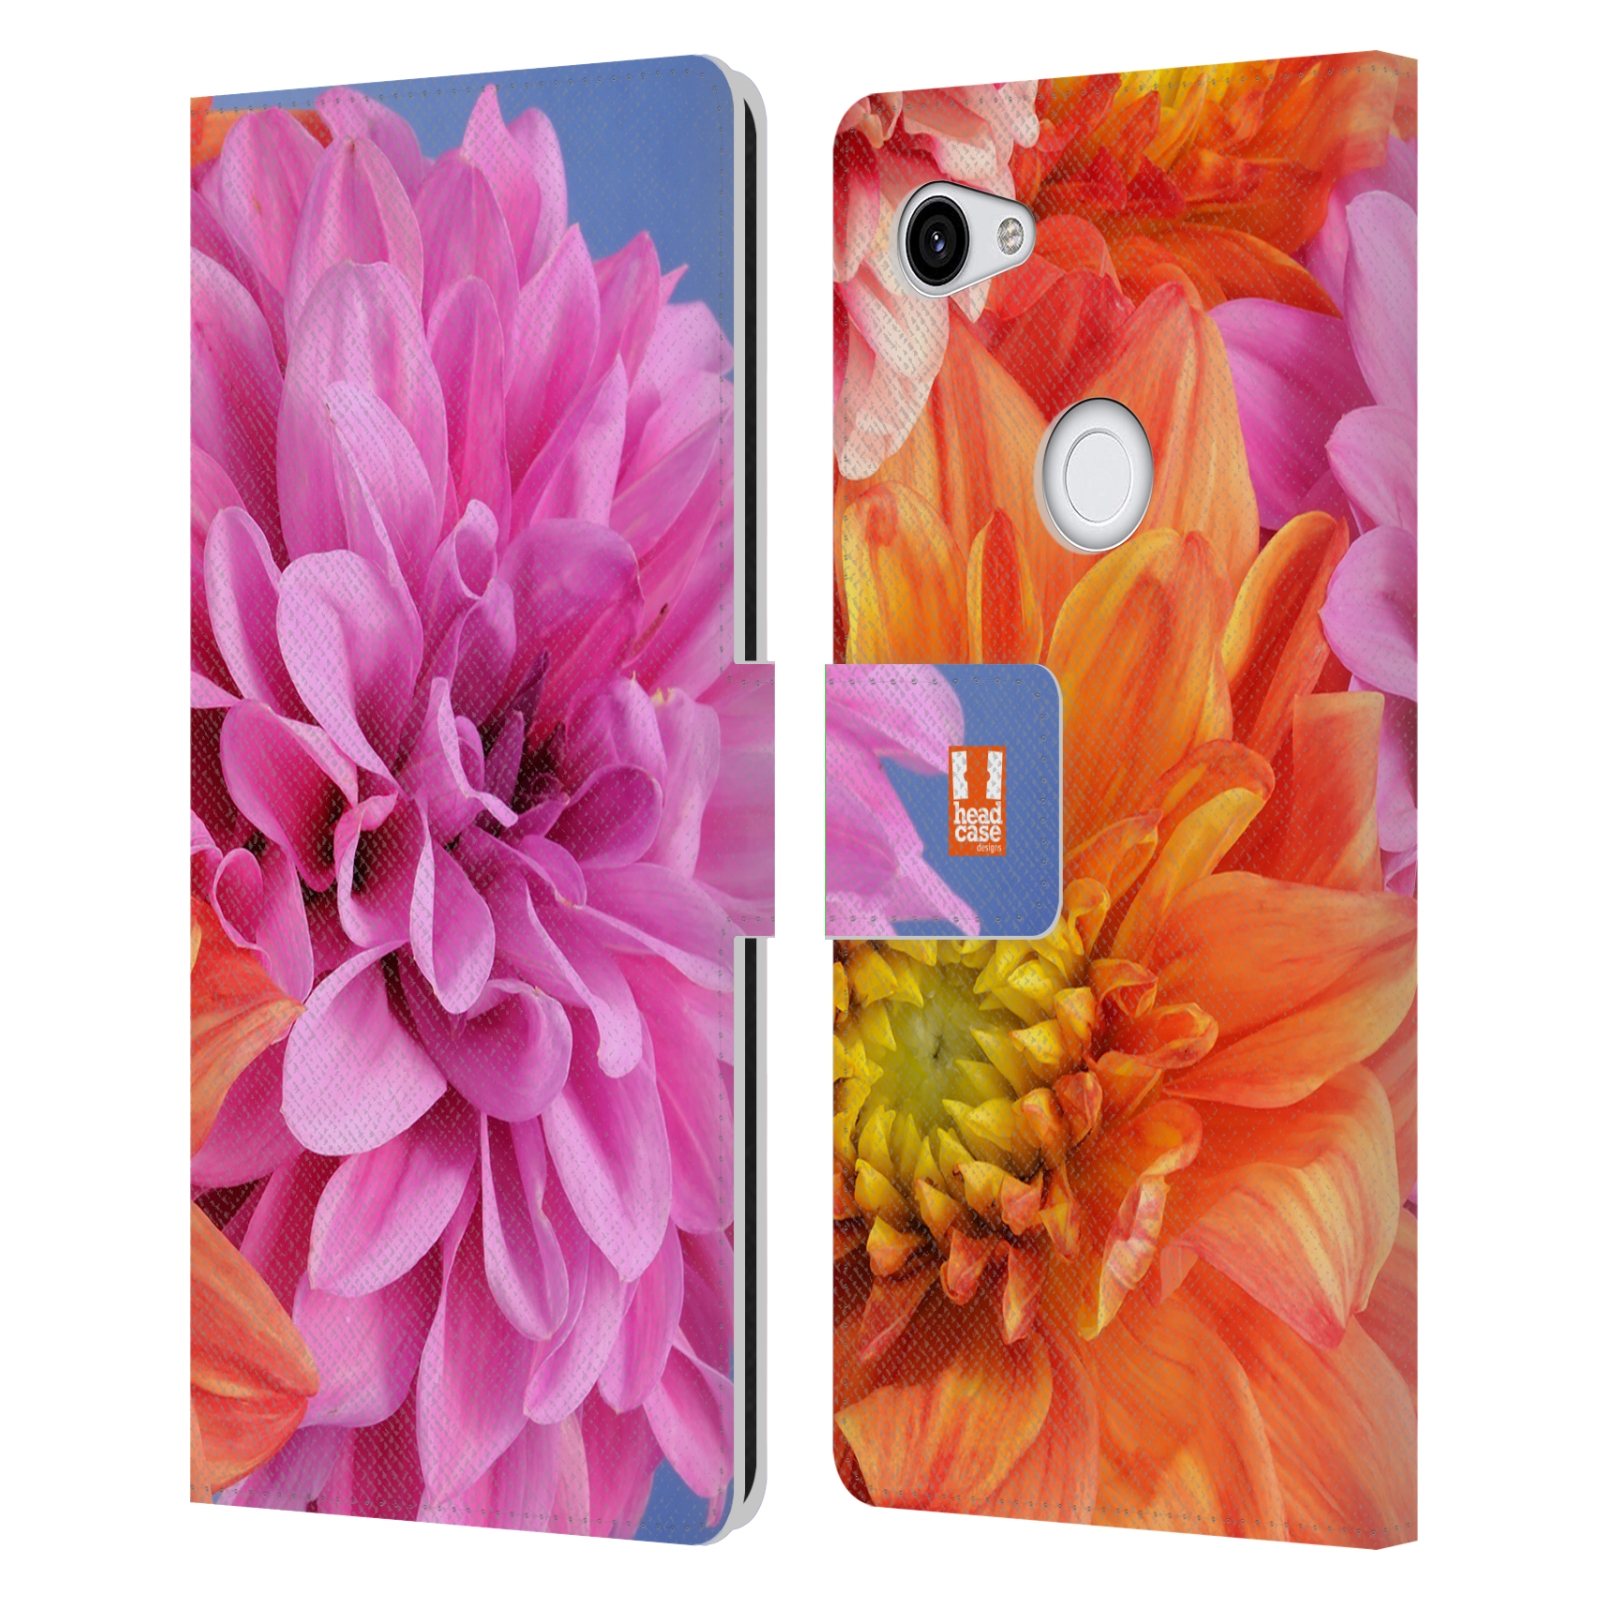 Pouzdro na mobil Google Pixel 3a XL květy foto Jiřinka růžová a oranžová